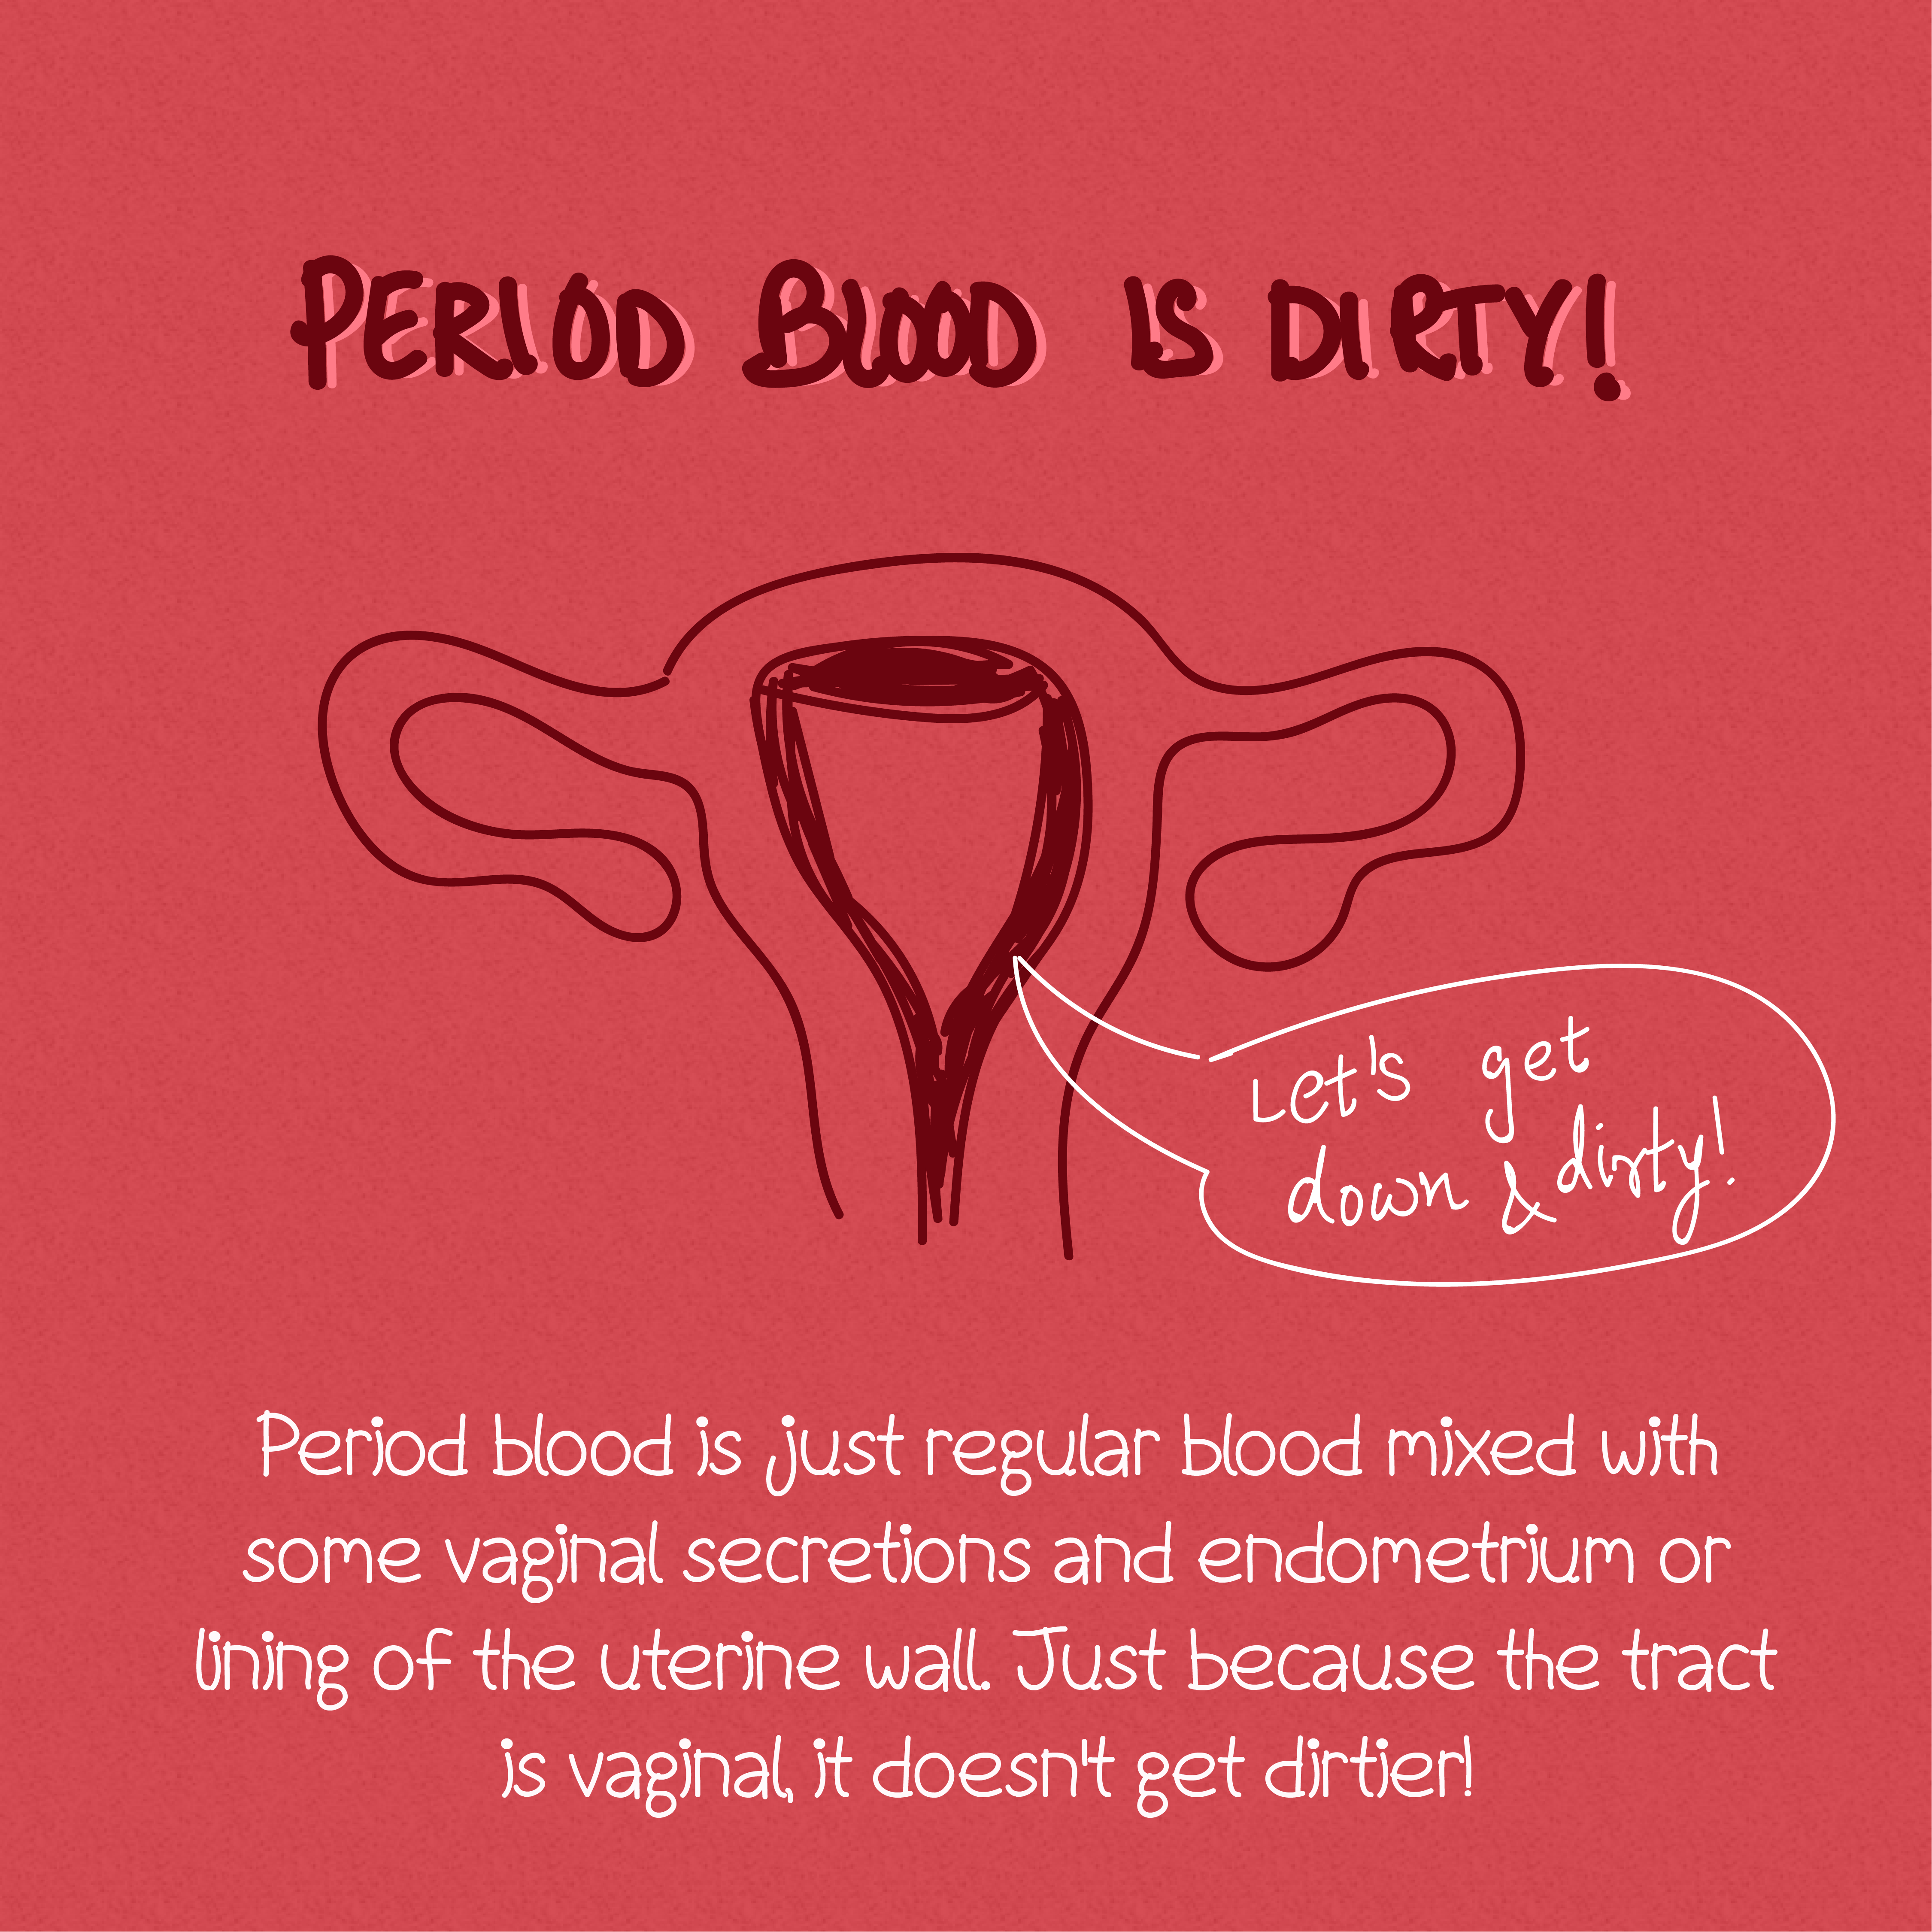 Menstruation Myths & Facts - Fuzia